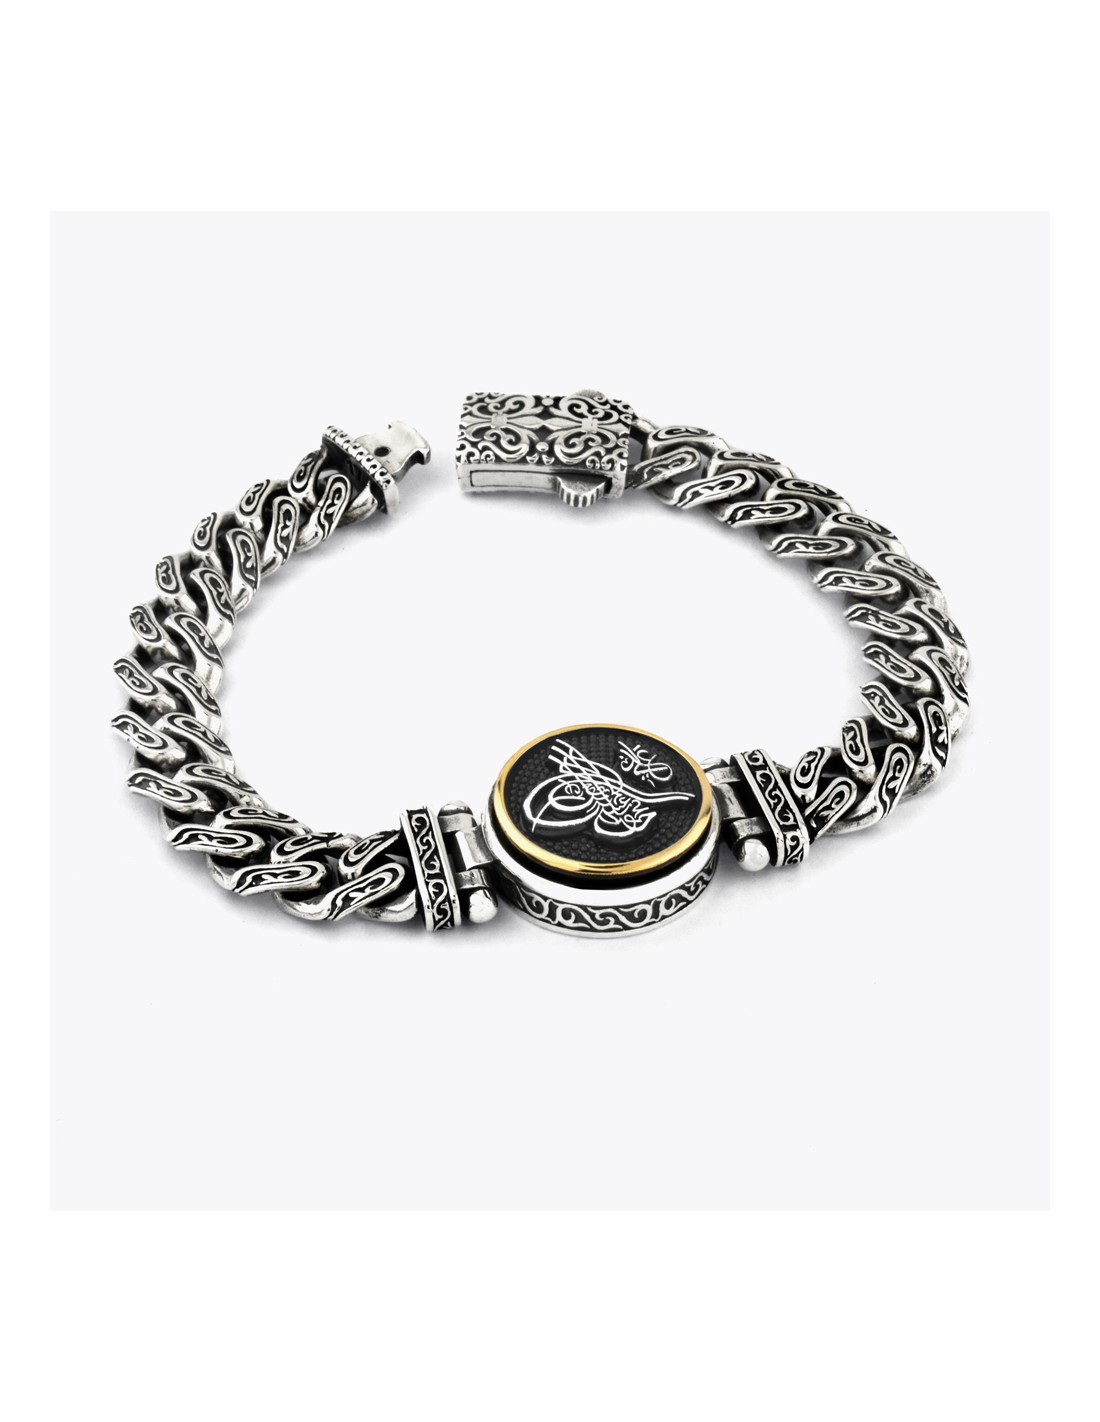 Classic Chain Bracelet 95% silver bracelet for men - YouTube